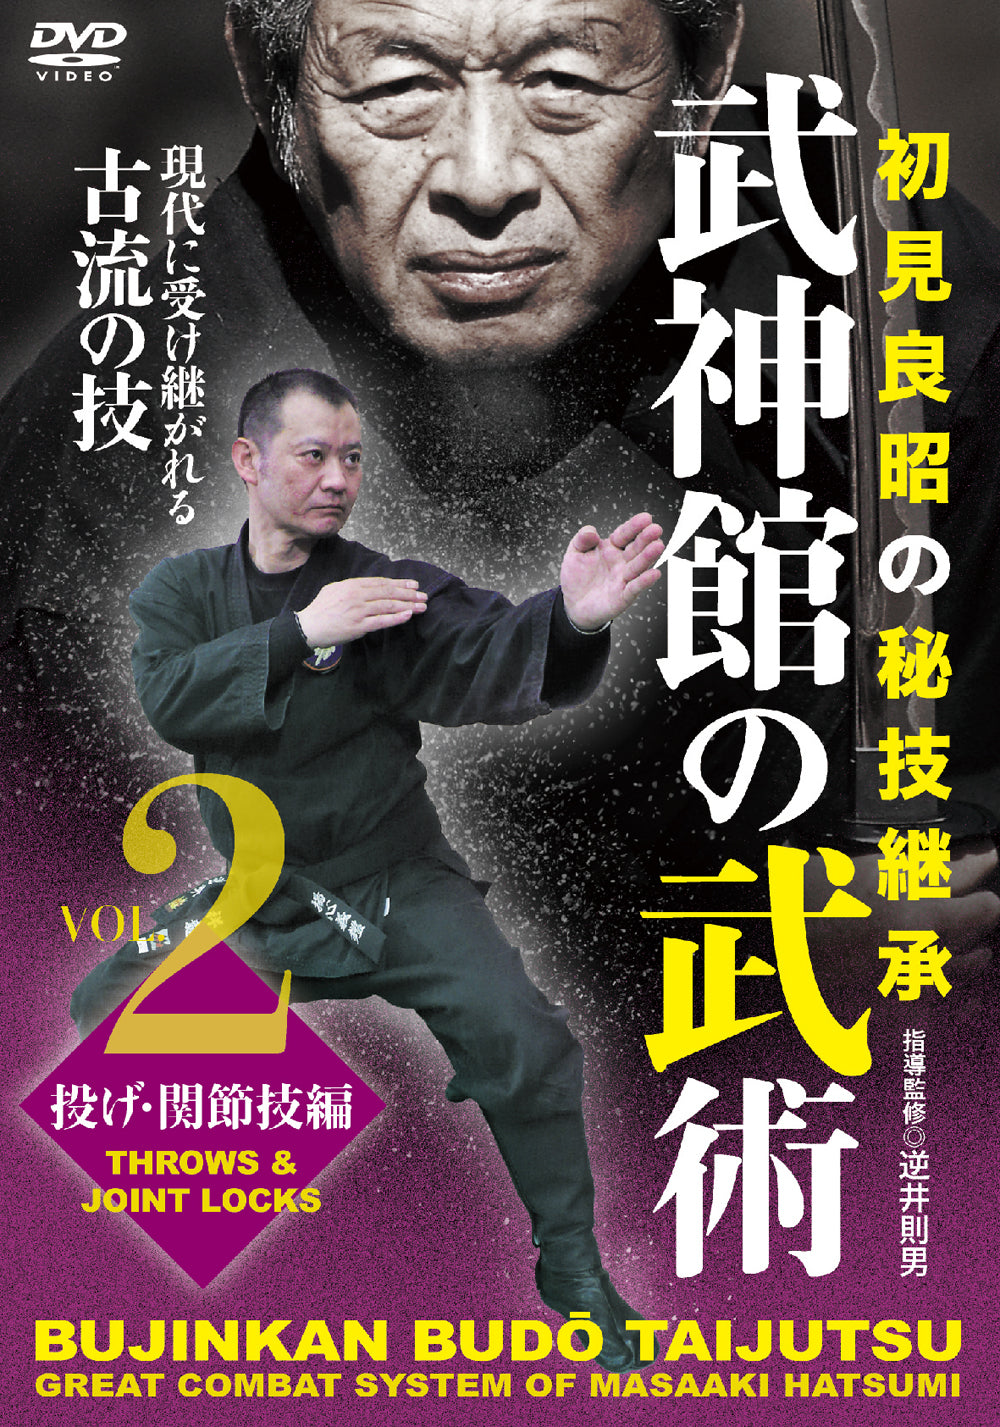 Bujinkan Budo Taijutsu: Gran sistema de combate de Masaaki Hatsumi DVD 2 de Norio Sakasai